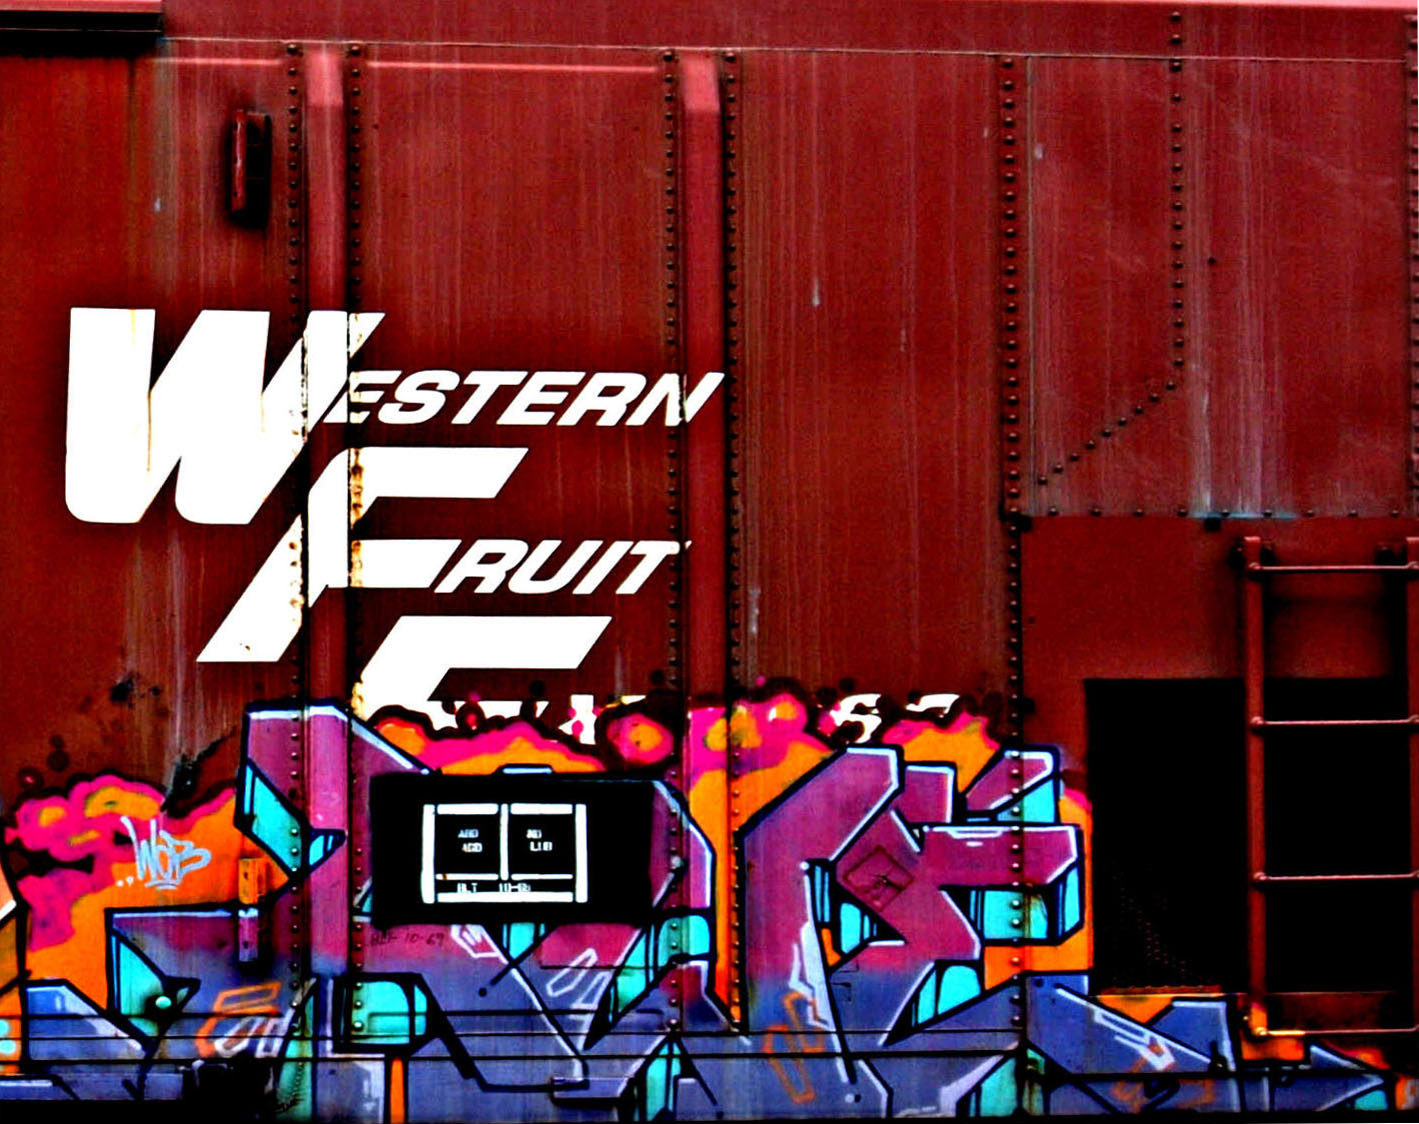 Railroad Graffiti - Boxcar Art - Western Fruit